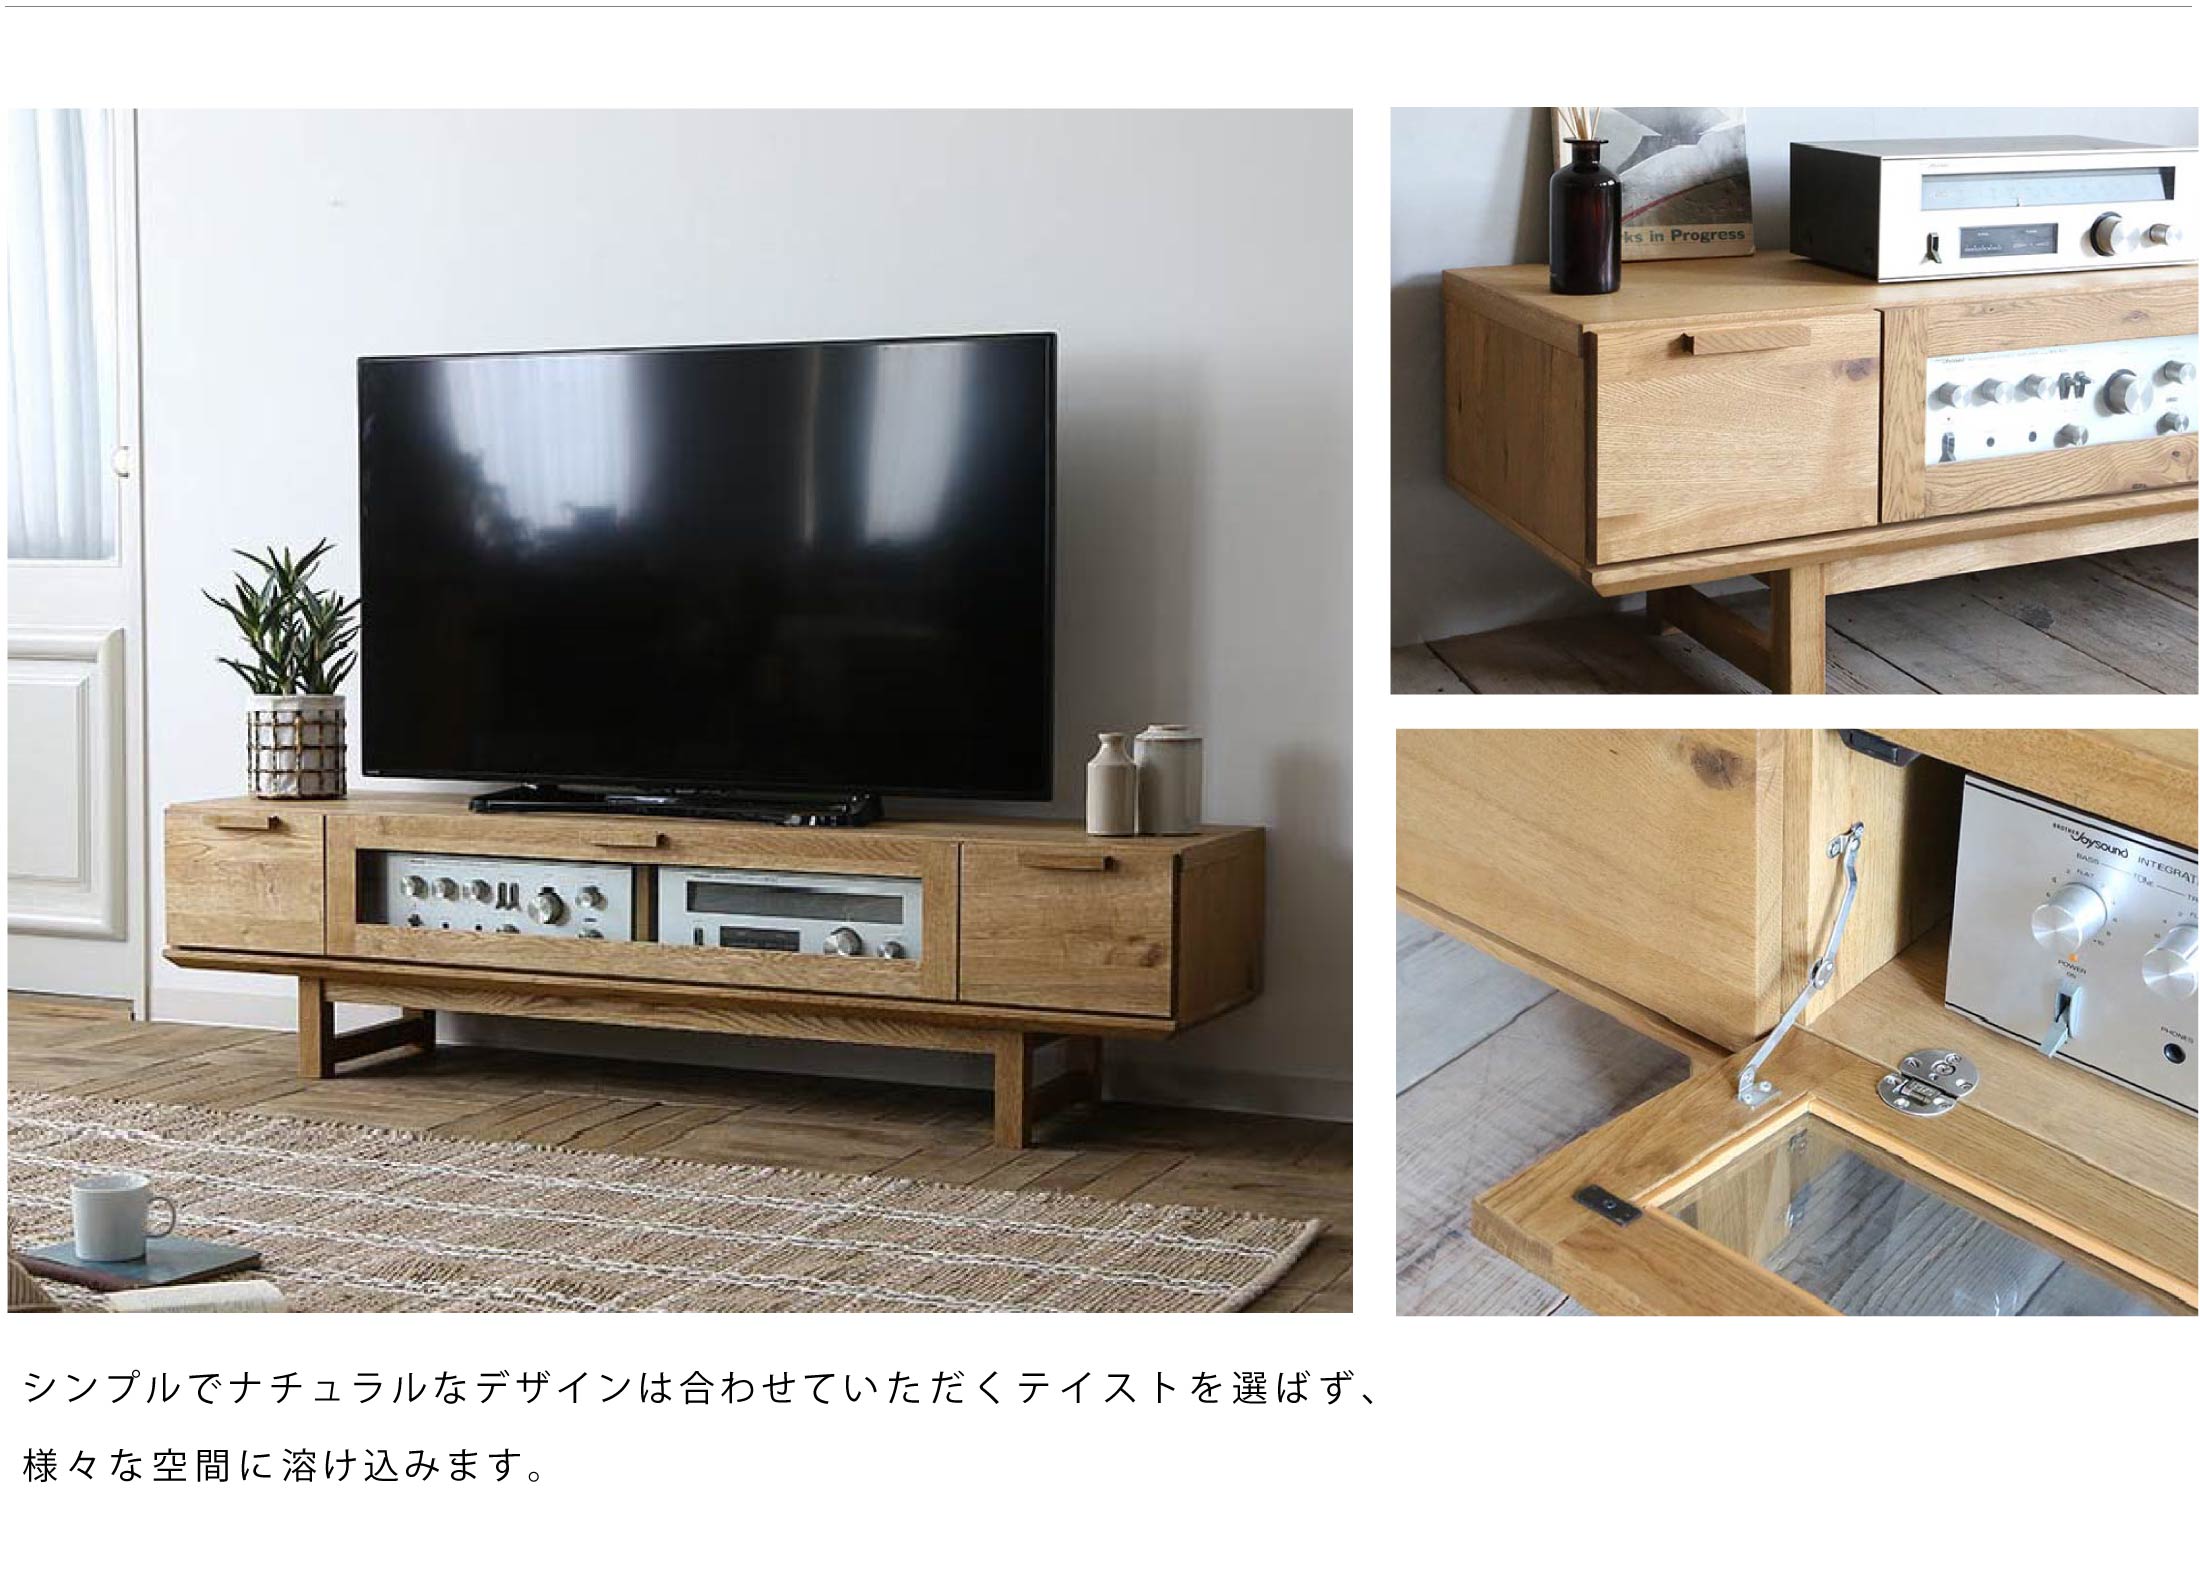 シンプルでナチュラルデザインでお部屋に合わせやすいテレビボード。